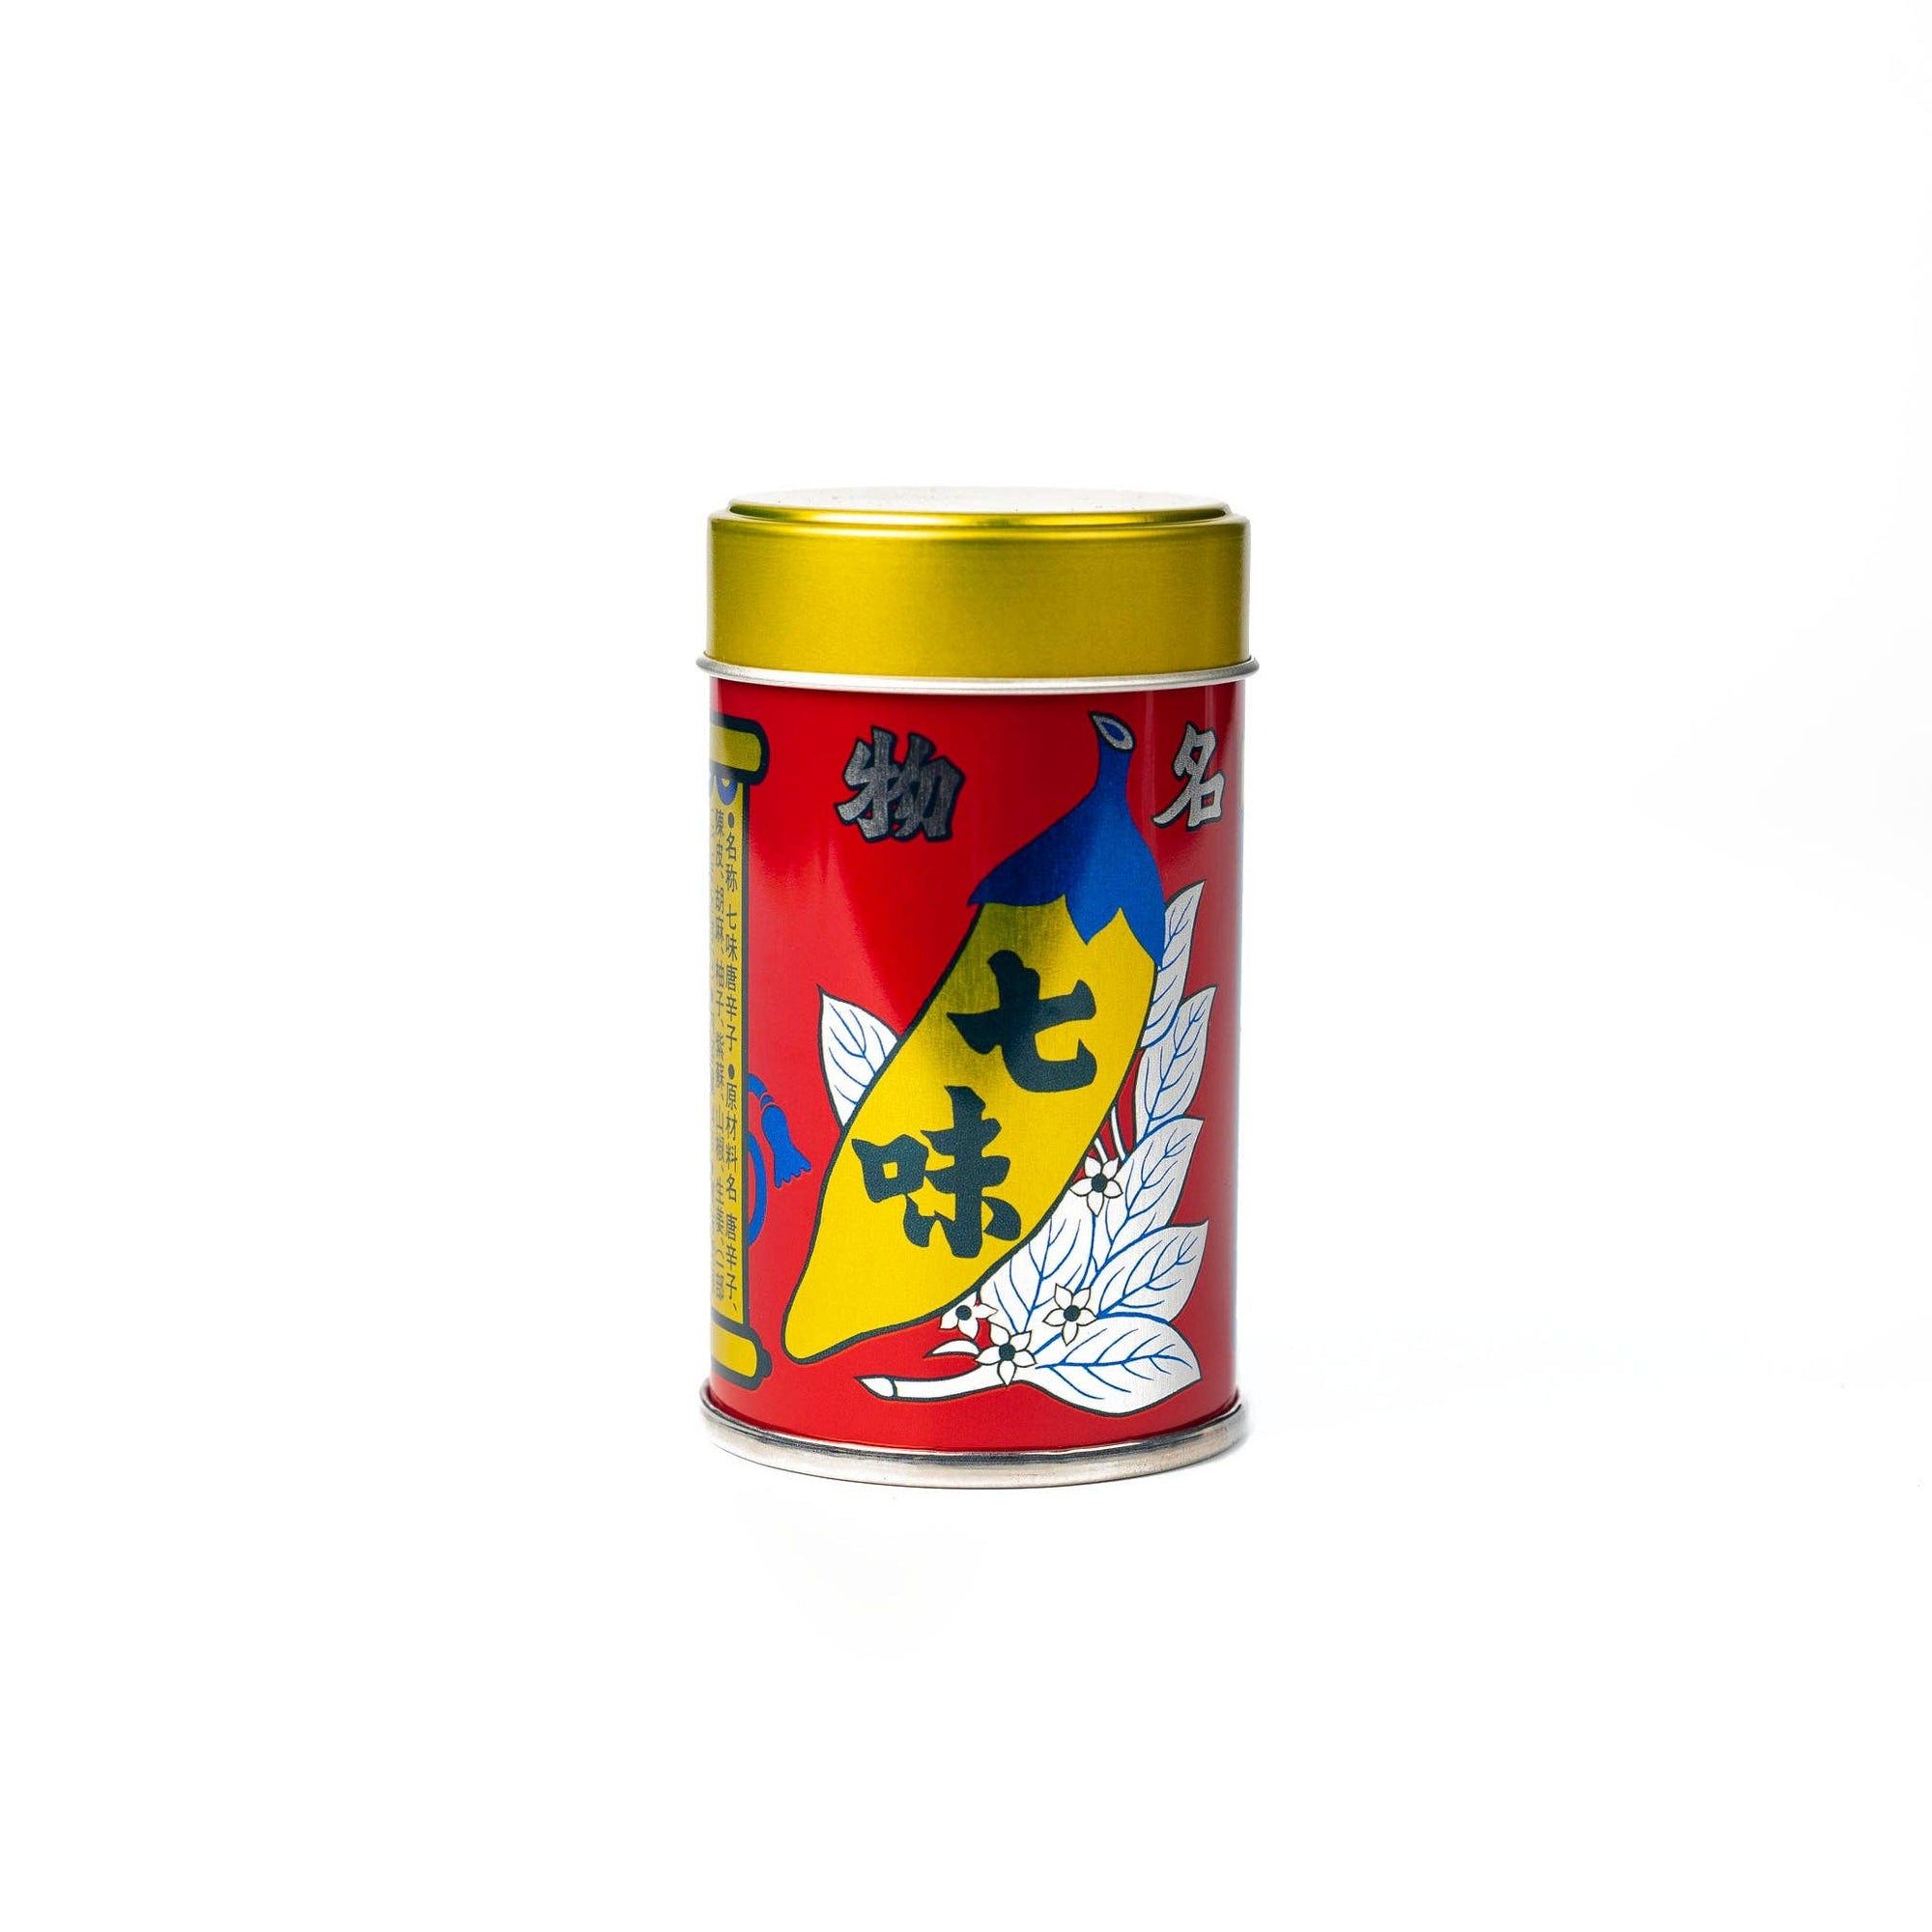 Shichimi Togarashi (Sun-dried Japanese Spice Mix) - Space Camp